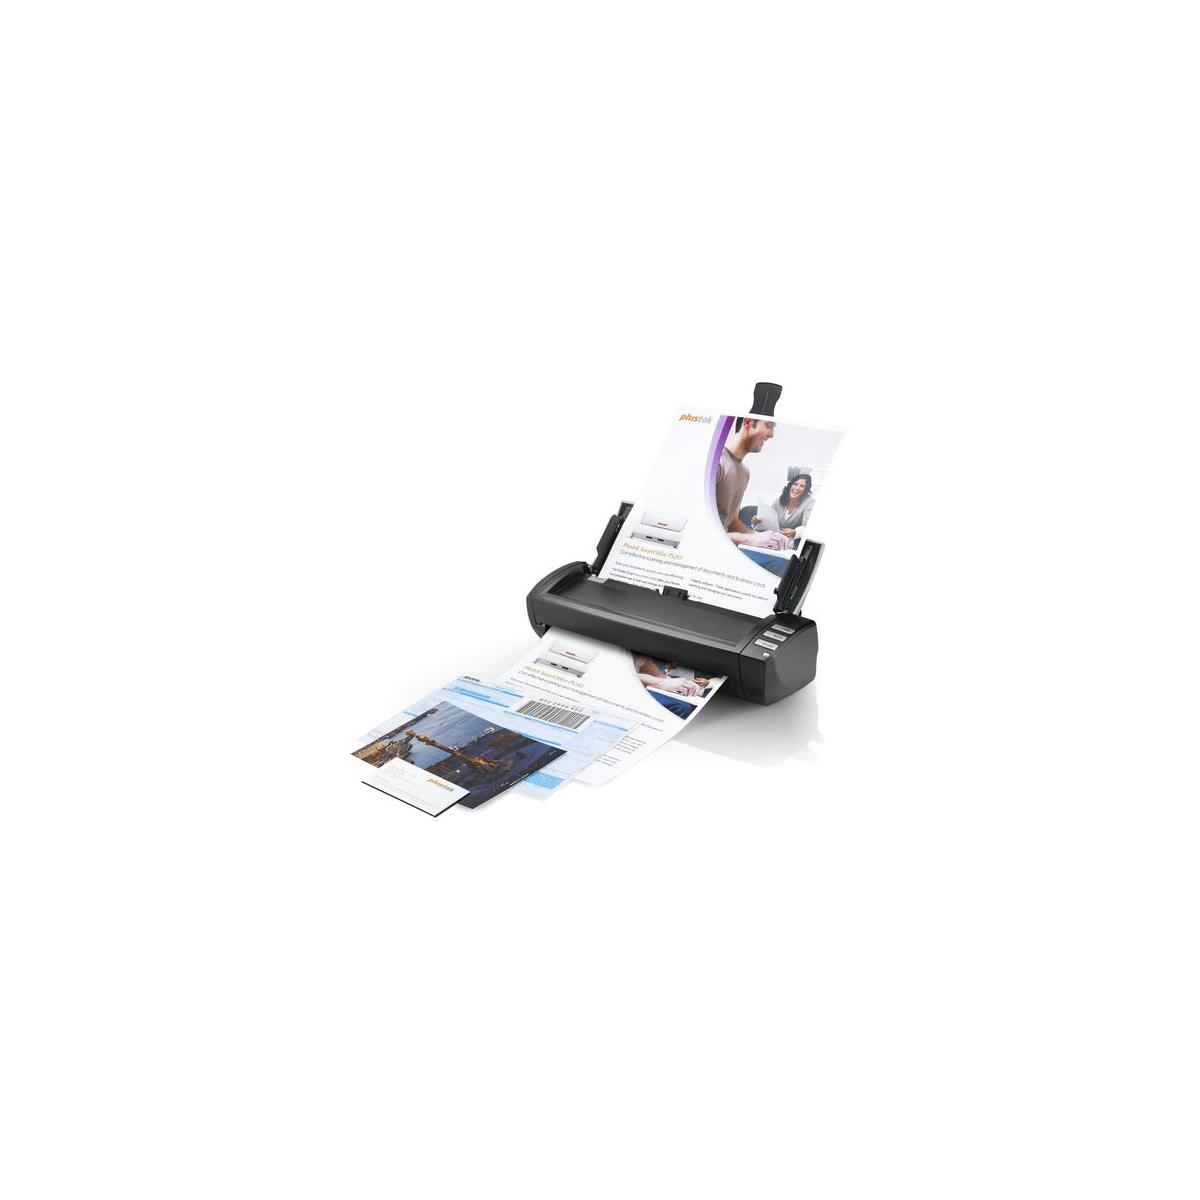 Настольный сканер Plustek MobileOffice AD480 для карт и документов #783064607094